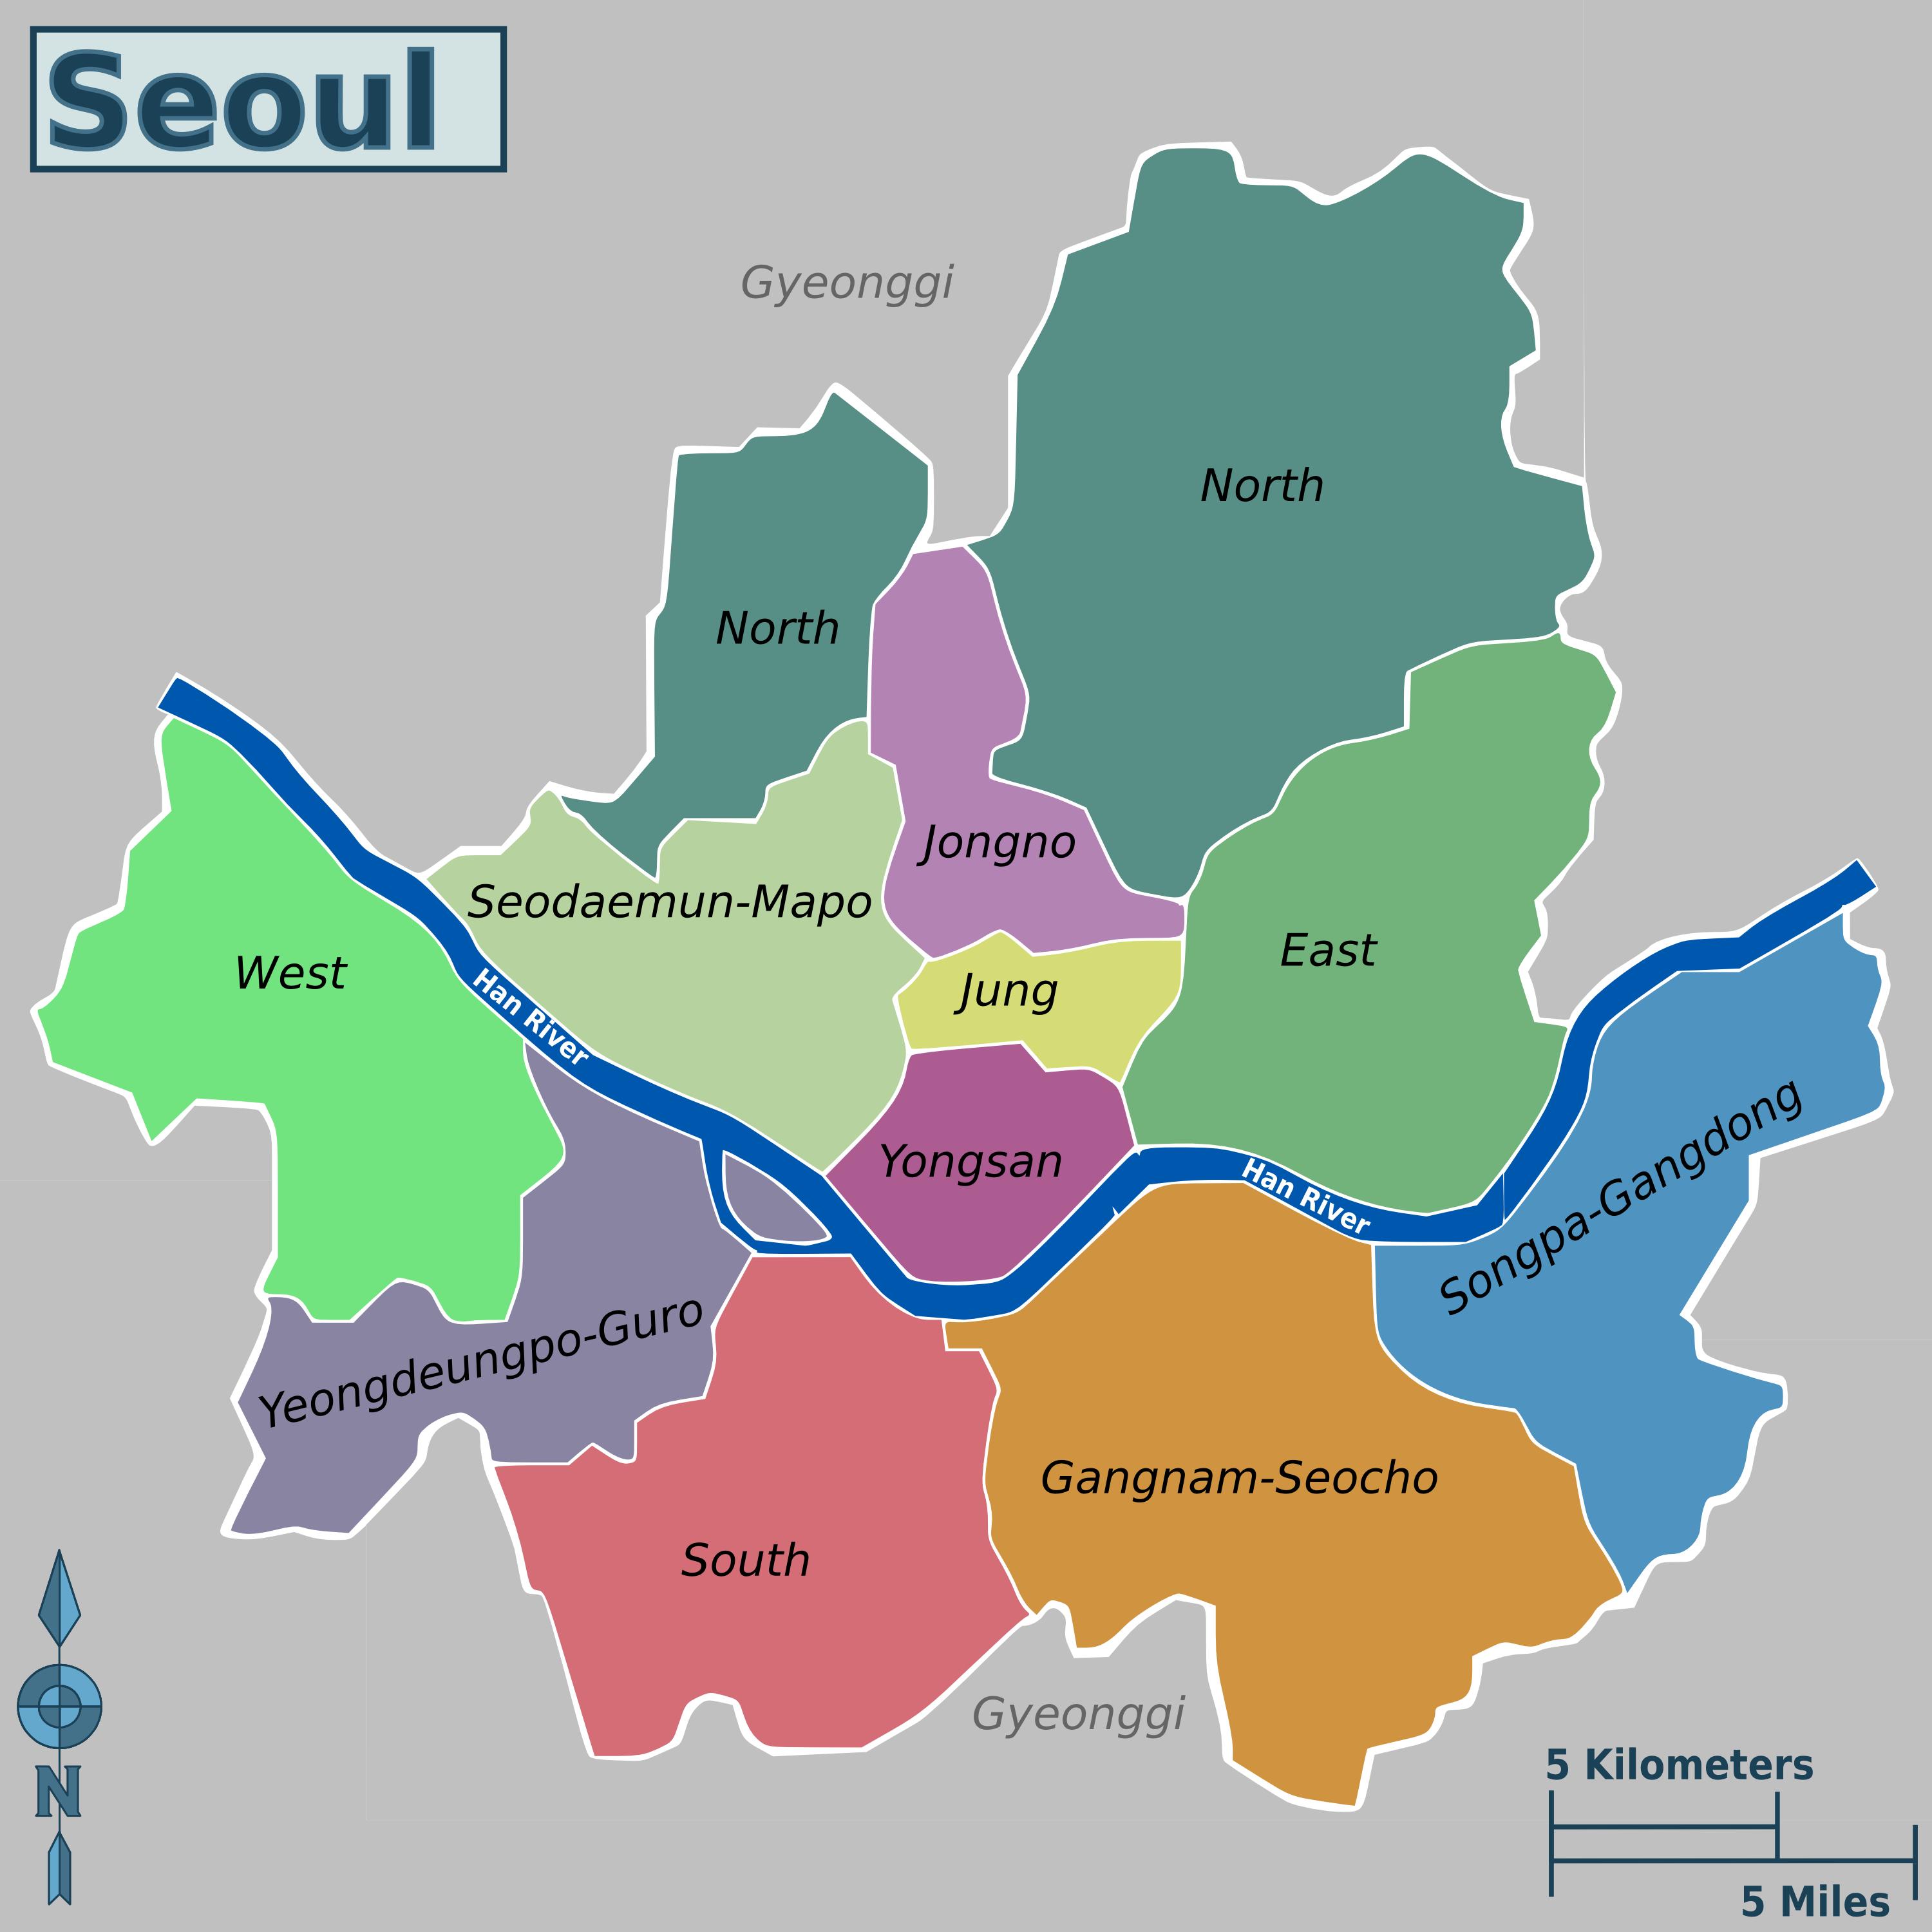 Mapa De Seul Mapa Offline E Mapa Detalhado Da Cidade De Seul | Images ...